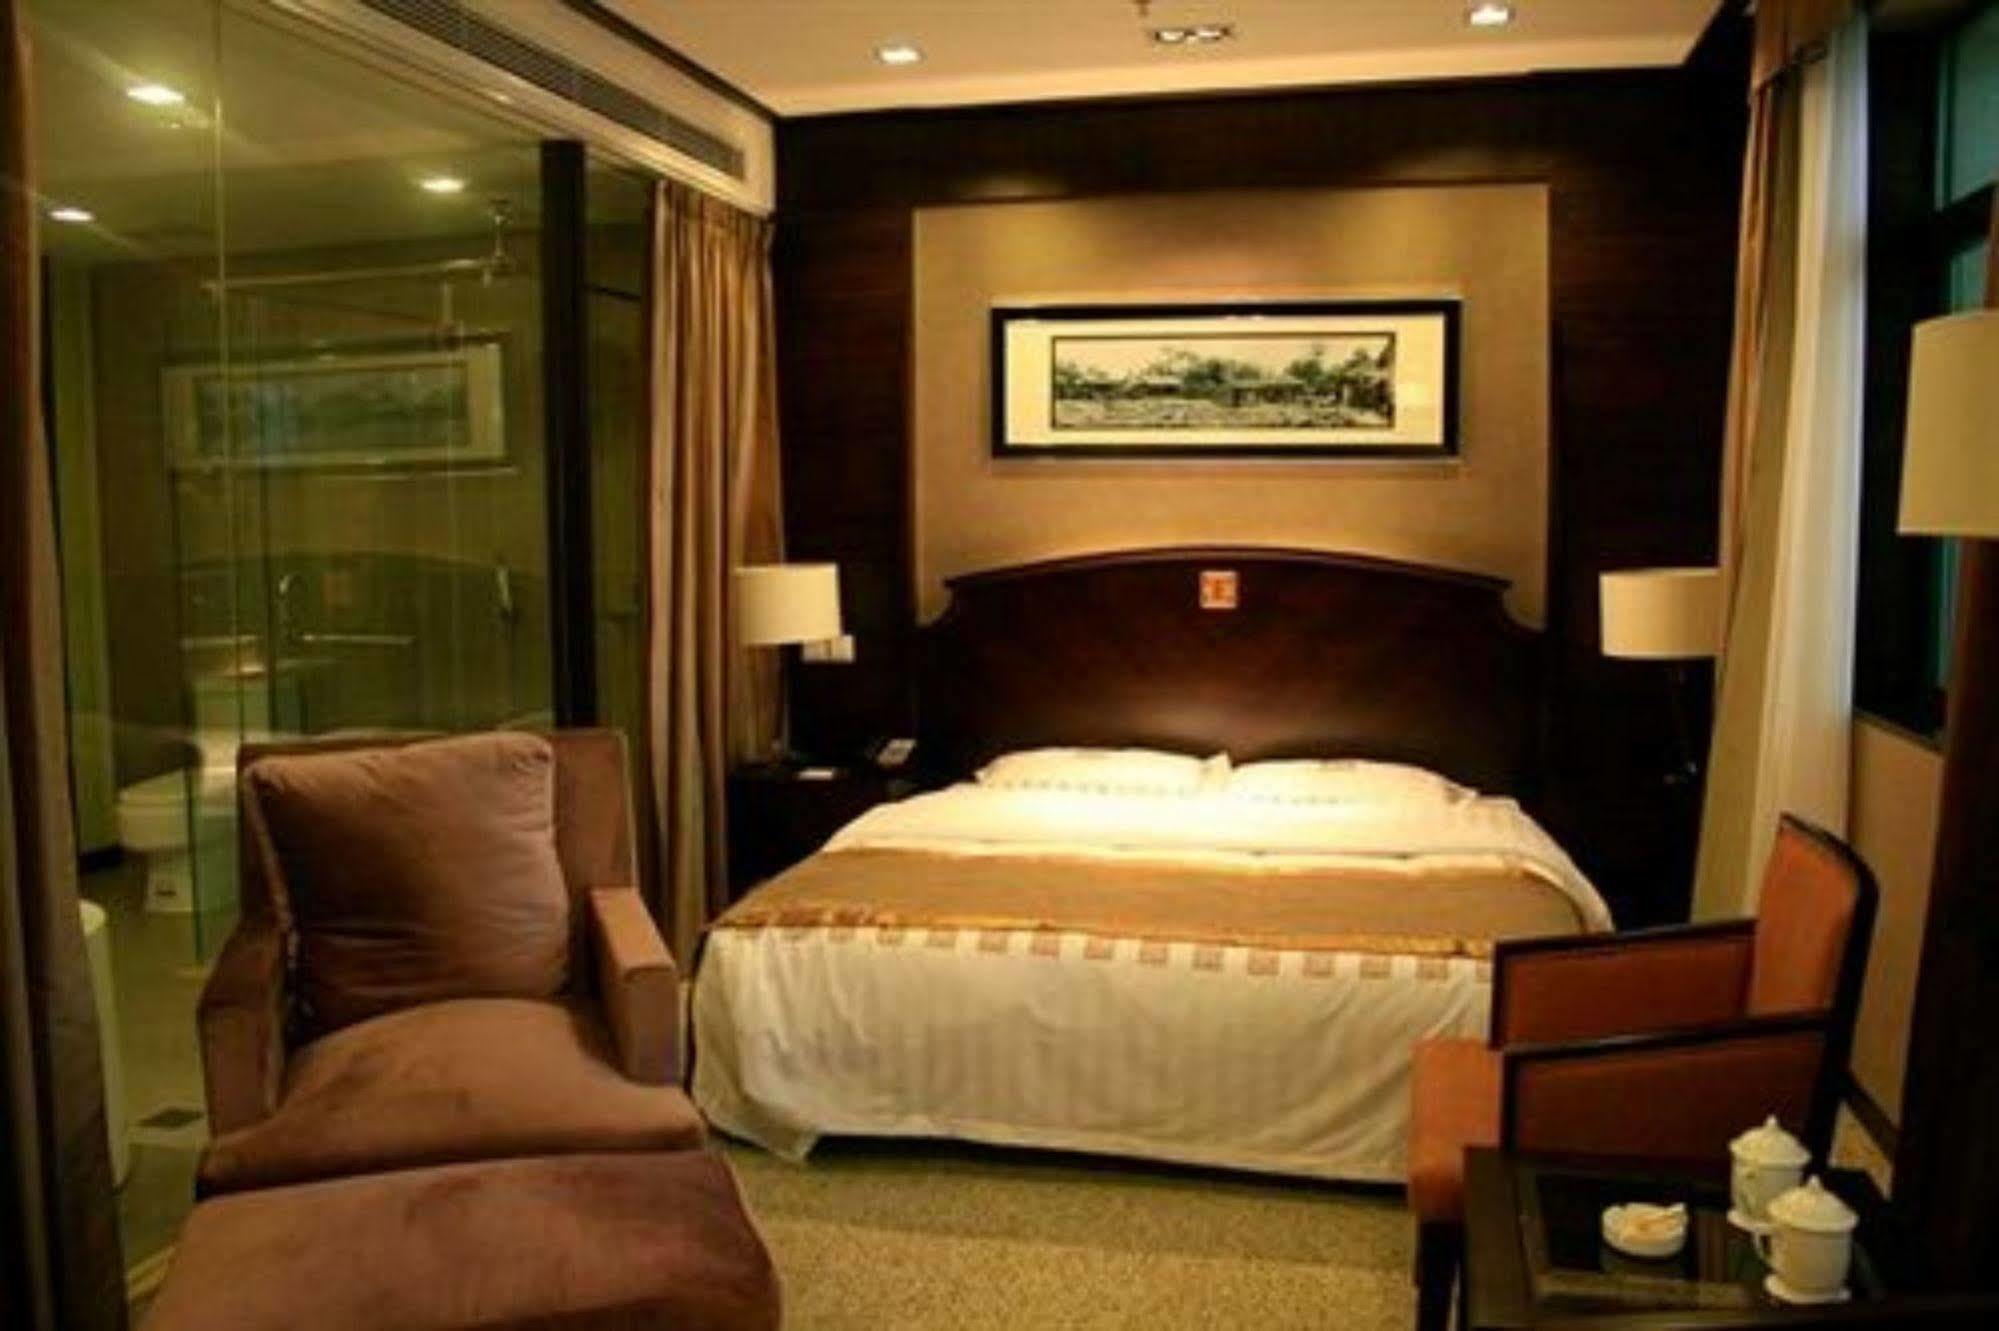 โรงแรมเจียนกั้ว ฮ็อตสปริง ปักกิ่ง Exterior รูปภาพ